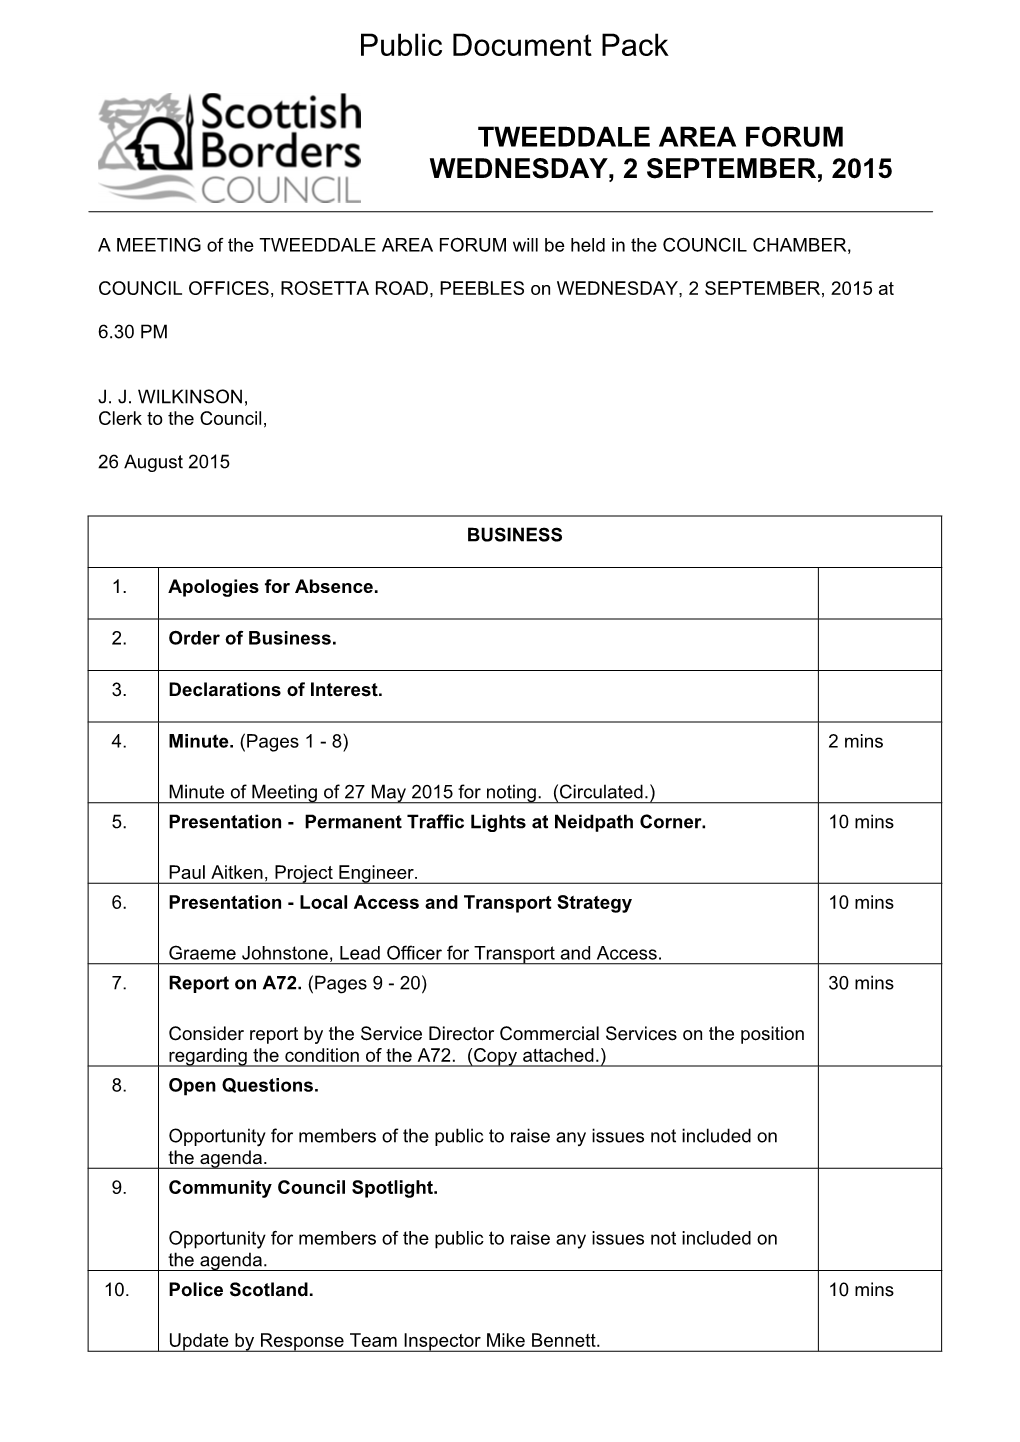 (Public Pack)Agenda Document for Tweeddale Area Forum, 02/09